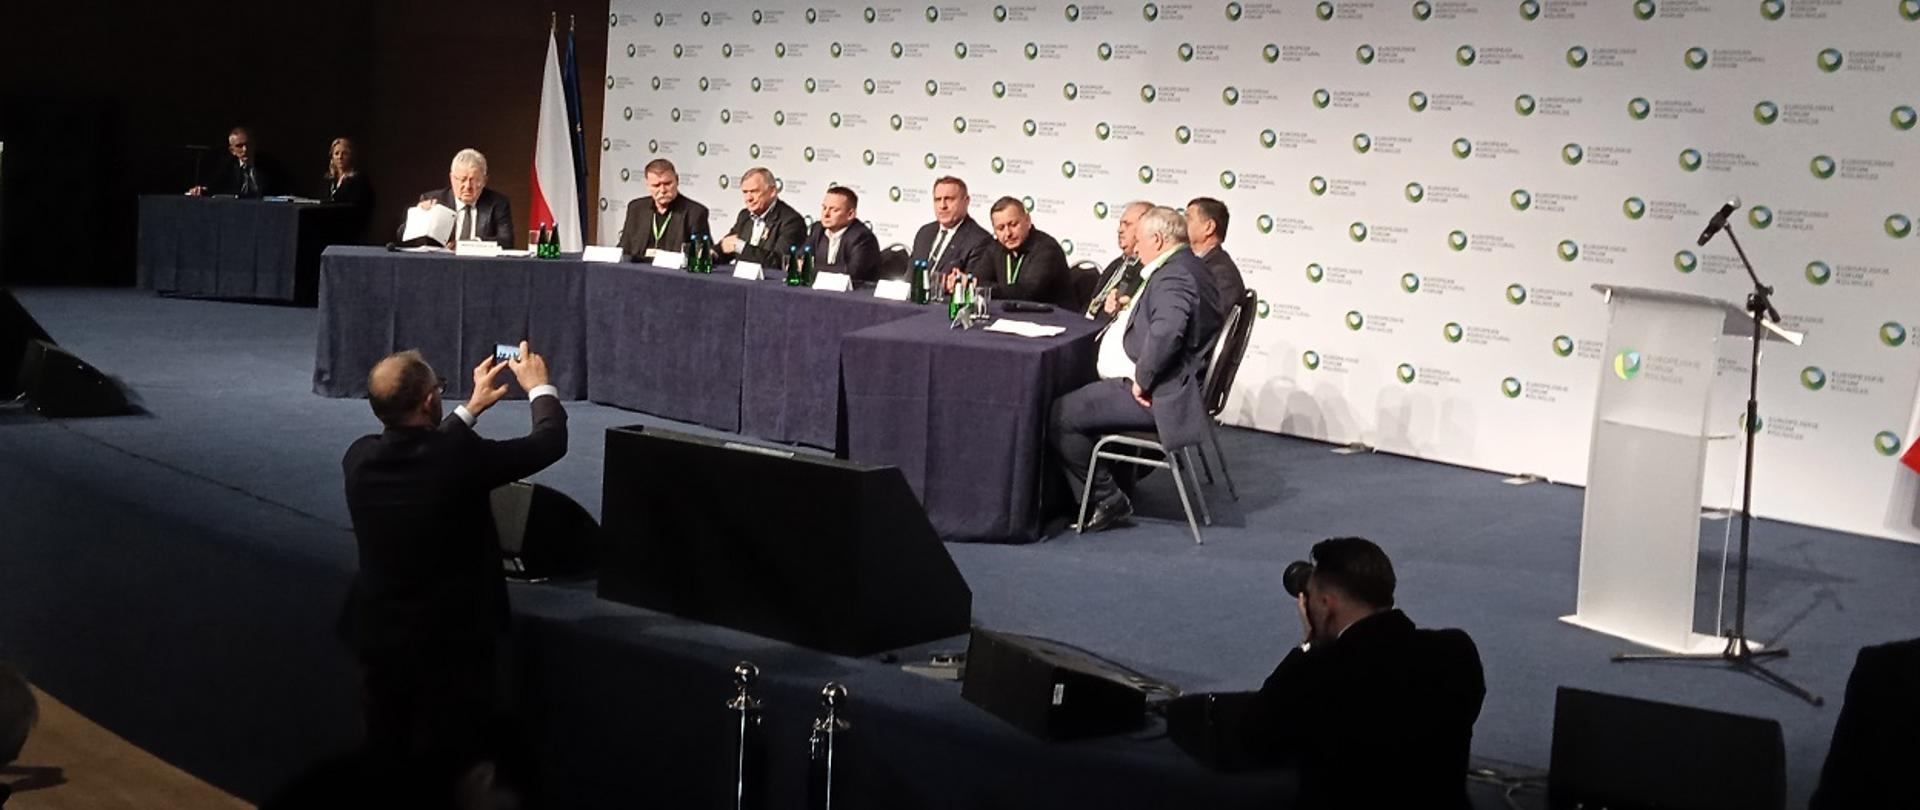 Forum w Jasionce debata ministra Czesława Siekierskiego z przedstawicielami organizacji rolniczych